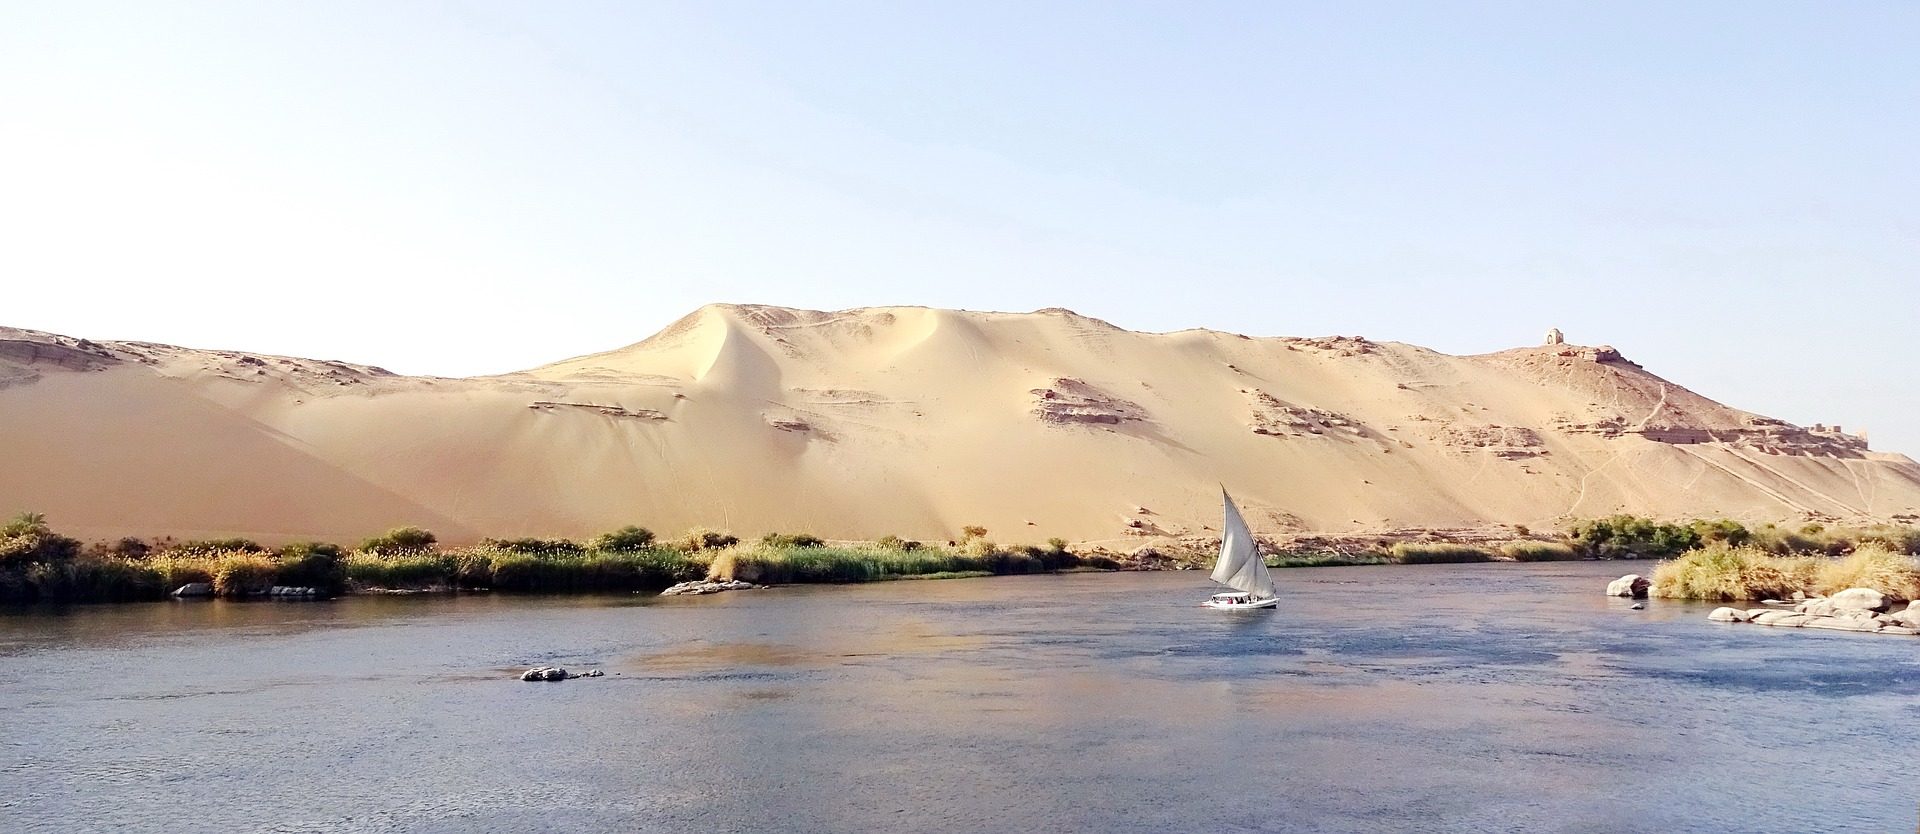 Nilkreuzfahrt und Badeurlaub Wüste